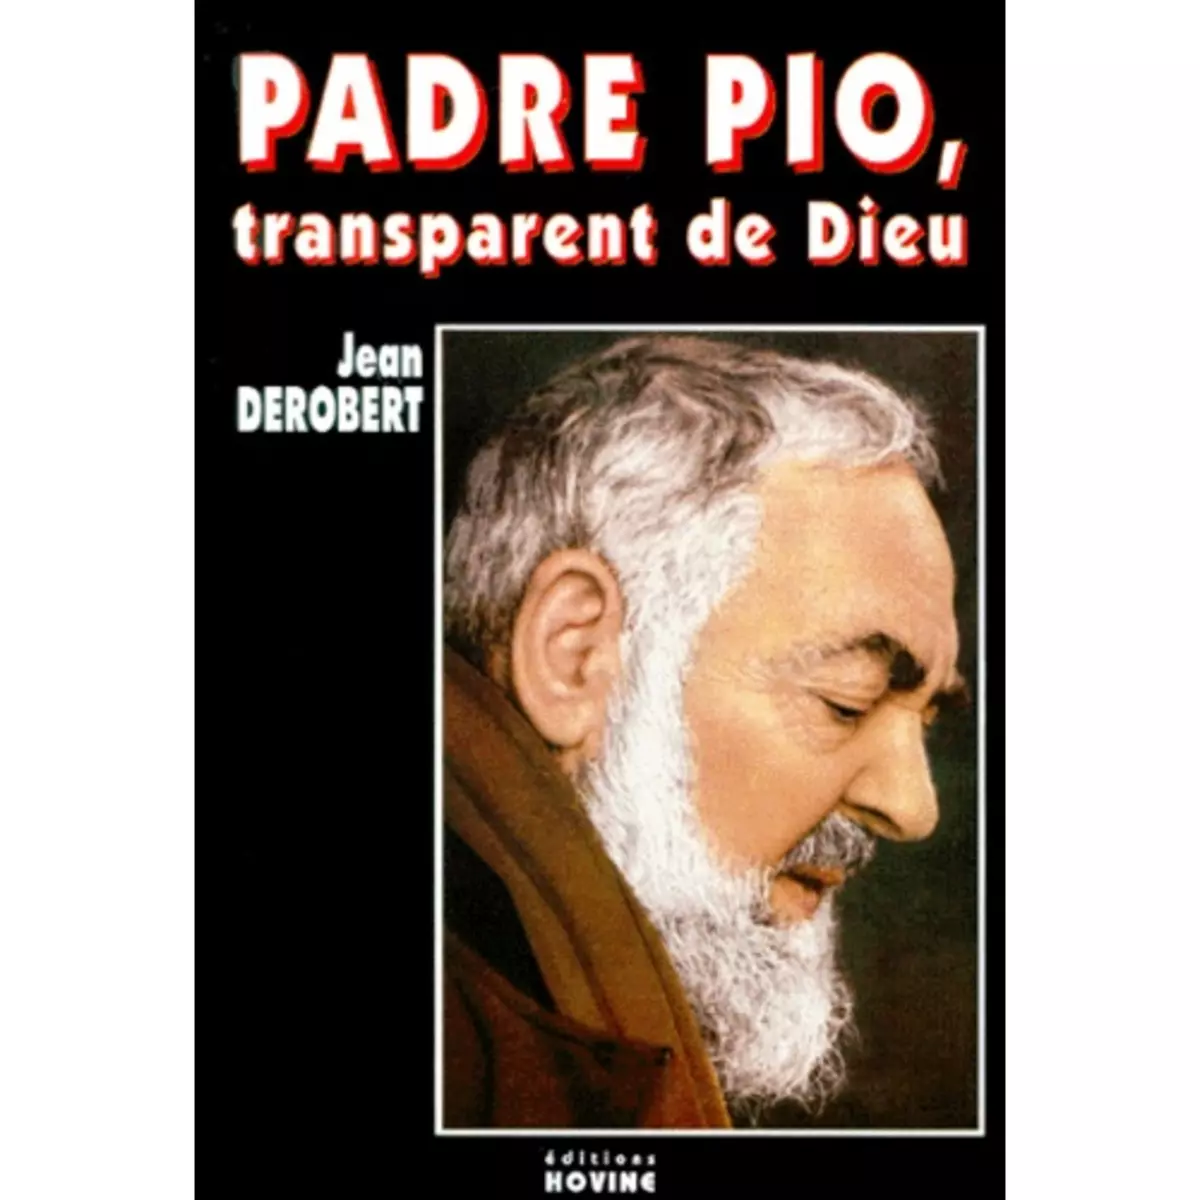  PADRE PIO, TRANSPARENT DE DIEU. PORTRAIT SPIRITUEL DE PADRE PIO AU TRAVERS DE SES LETTRES, Derobert Jean